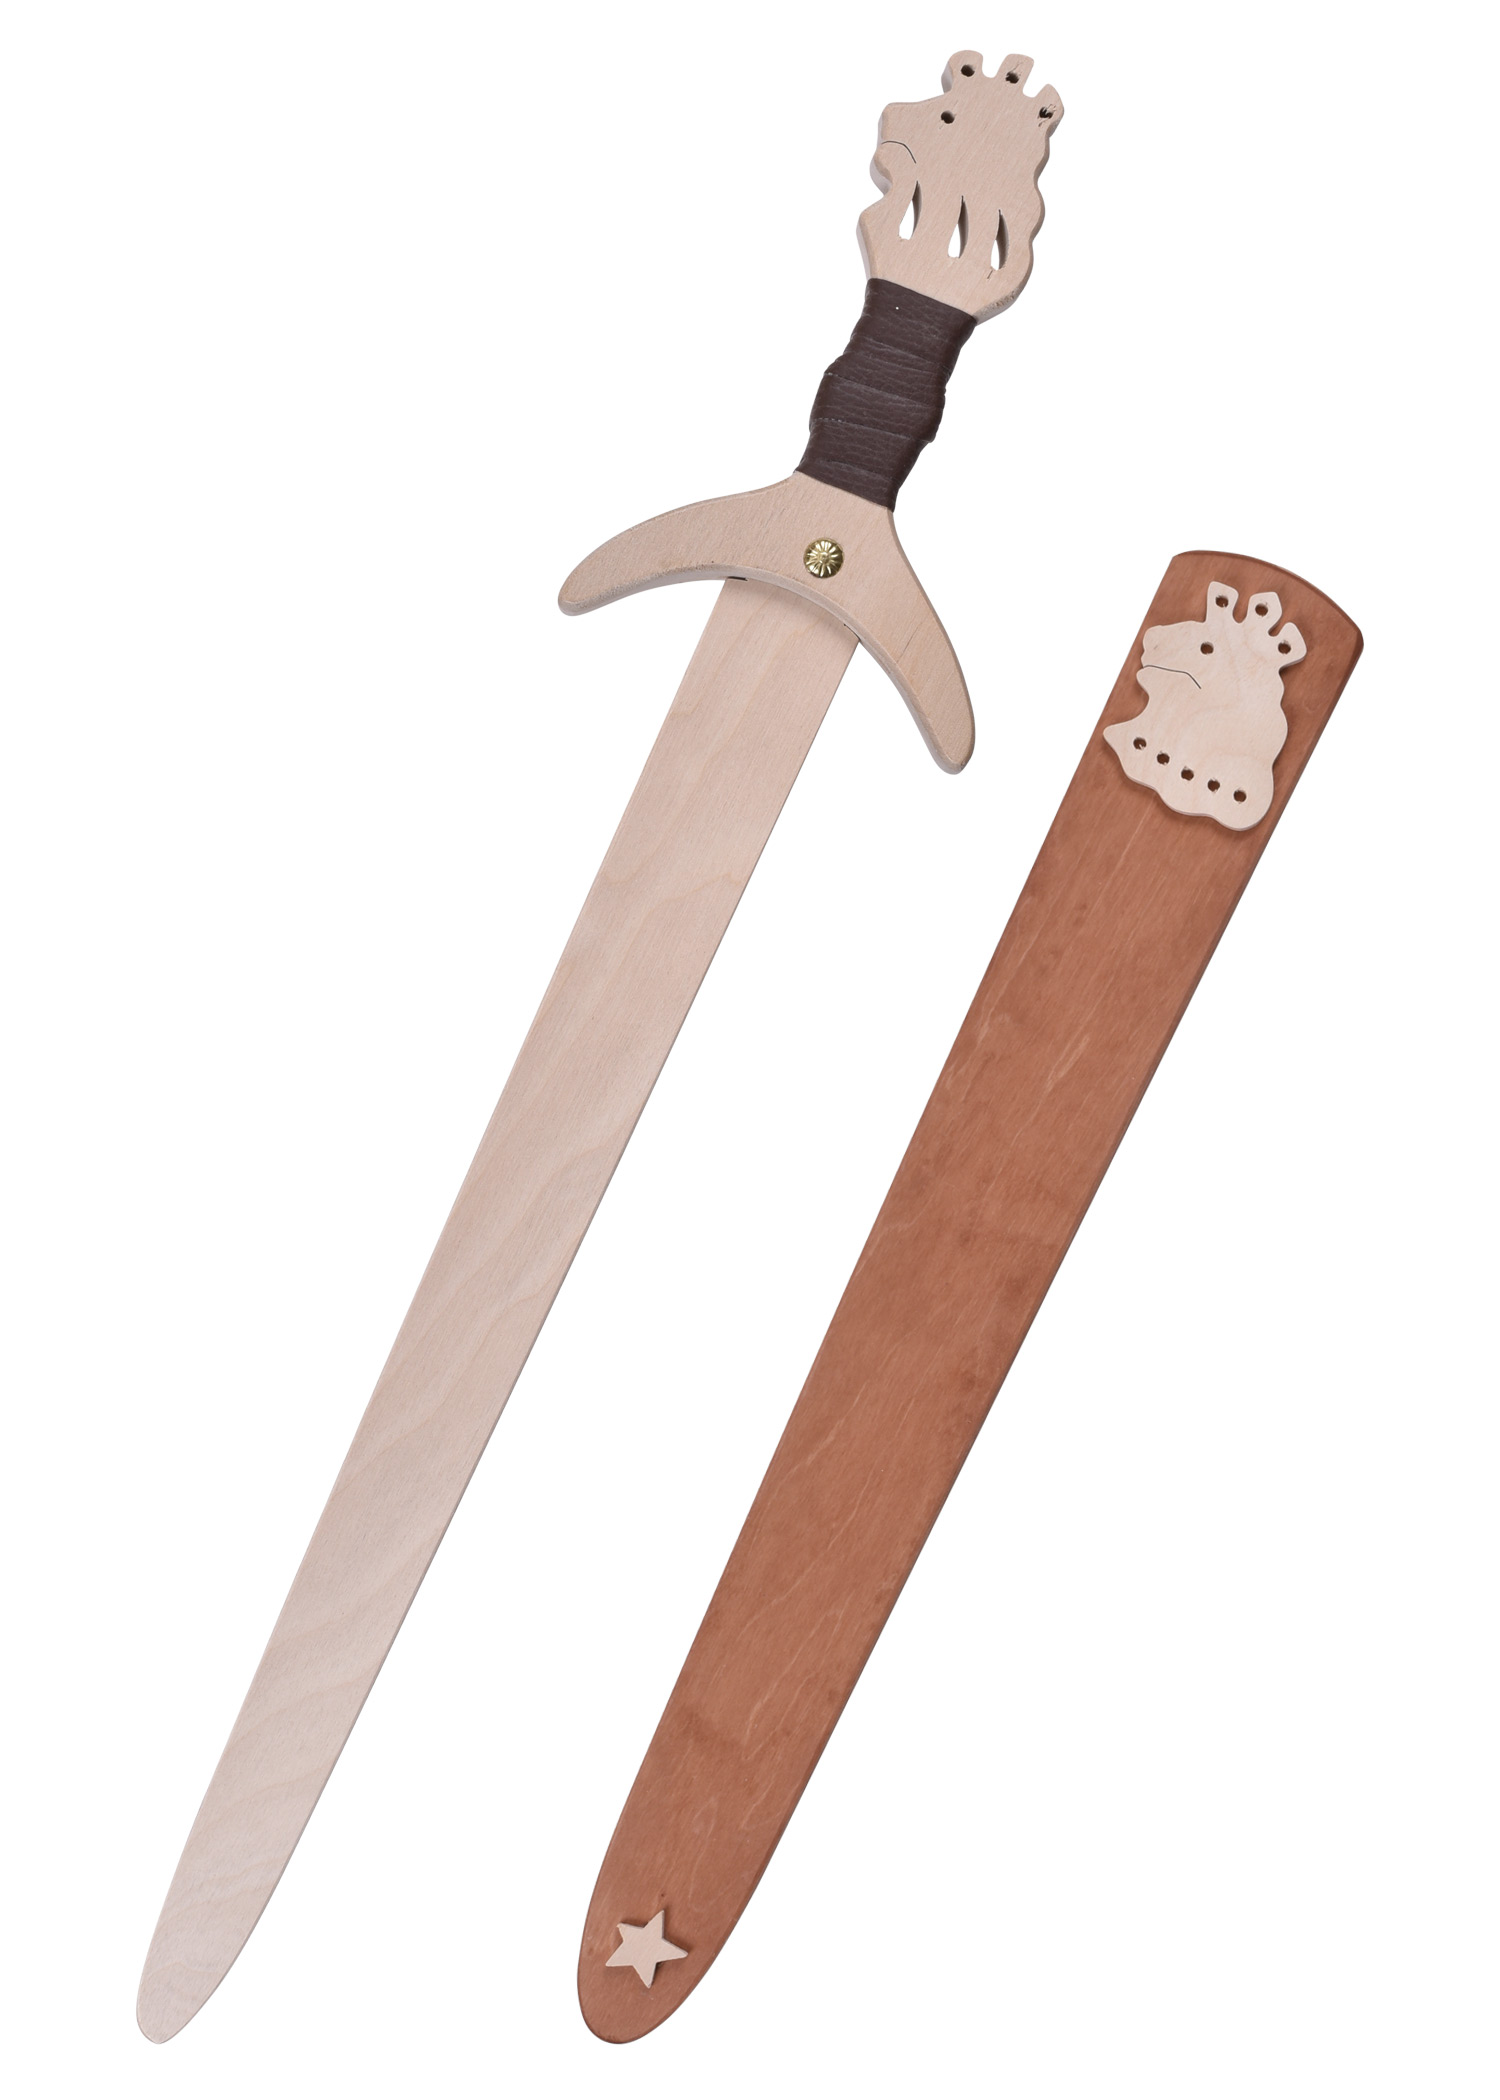 Kinder Ritterschwert Löwenstein aus Holz, mit Scheide, Länge 45 cm